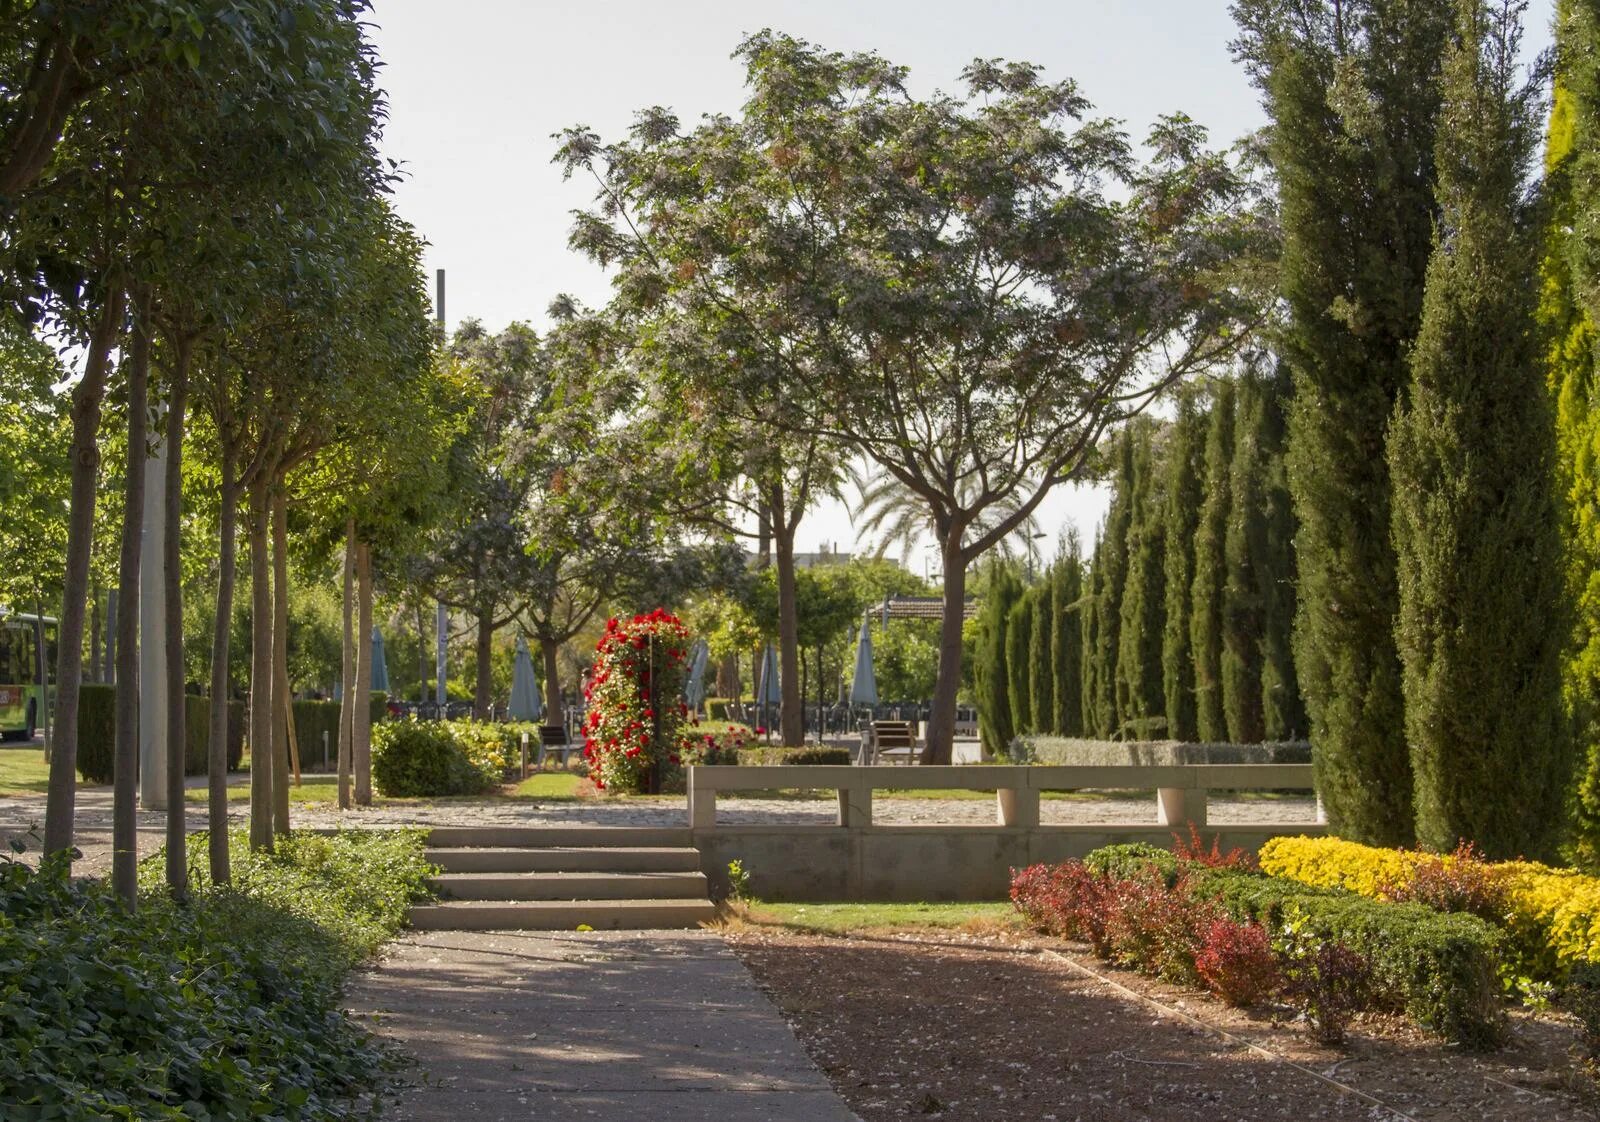 Аллея Испания. Аллеи дизайнерские. Кипре, рядом Университетский парк. Прогулочная аллея с местами для отдыха.